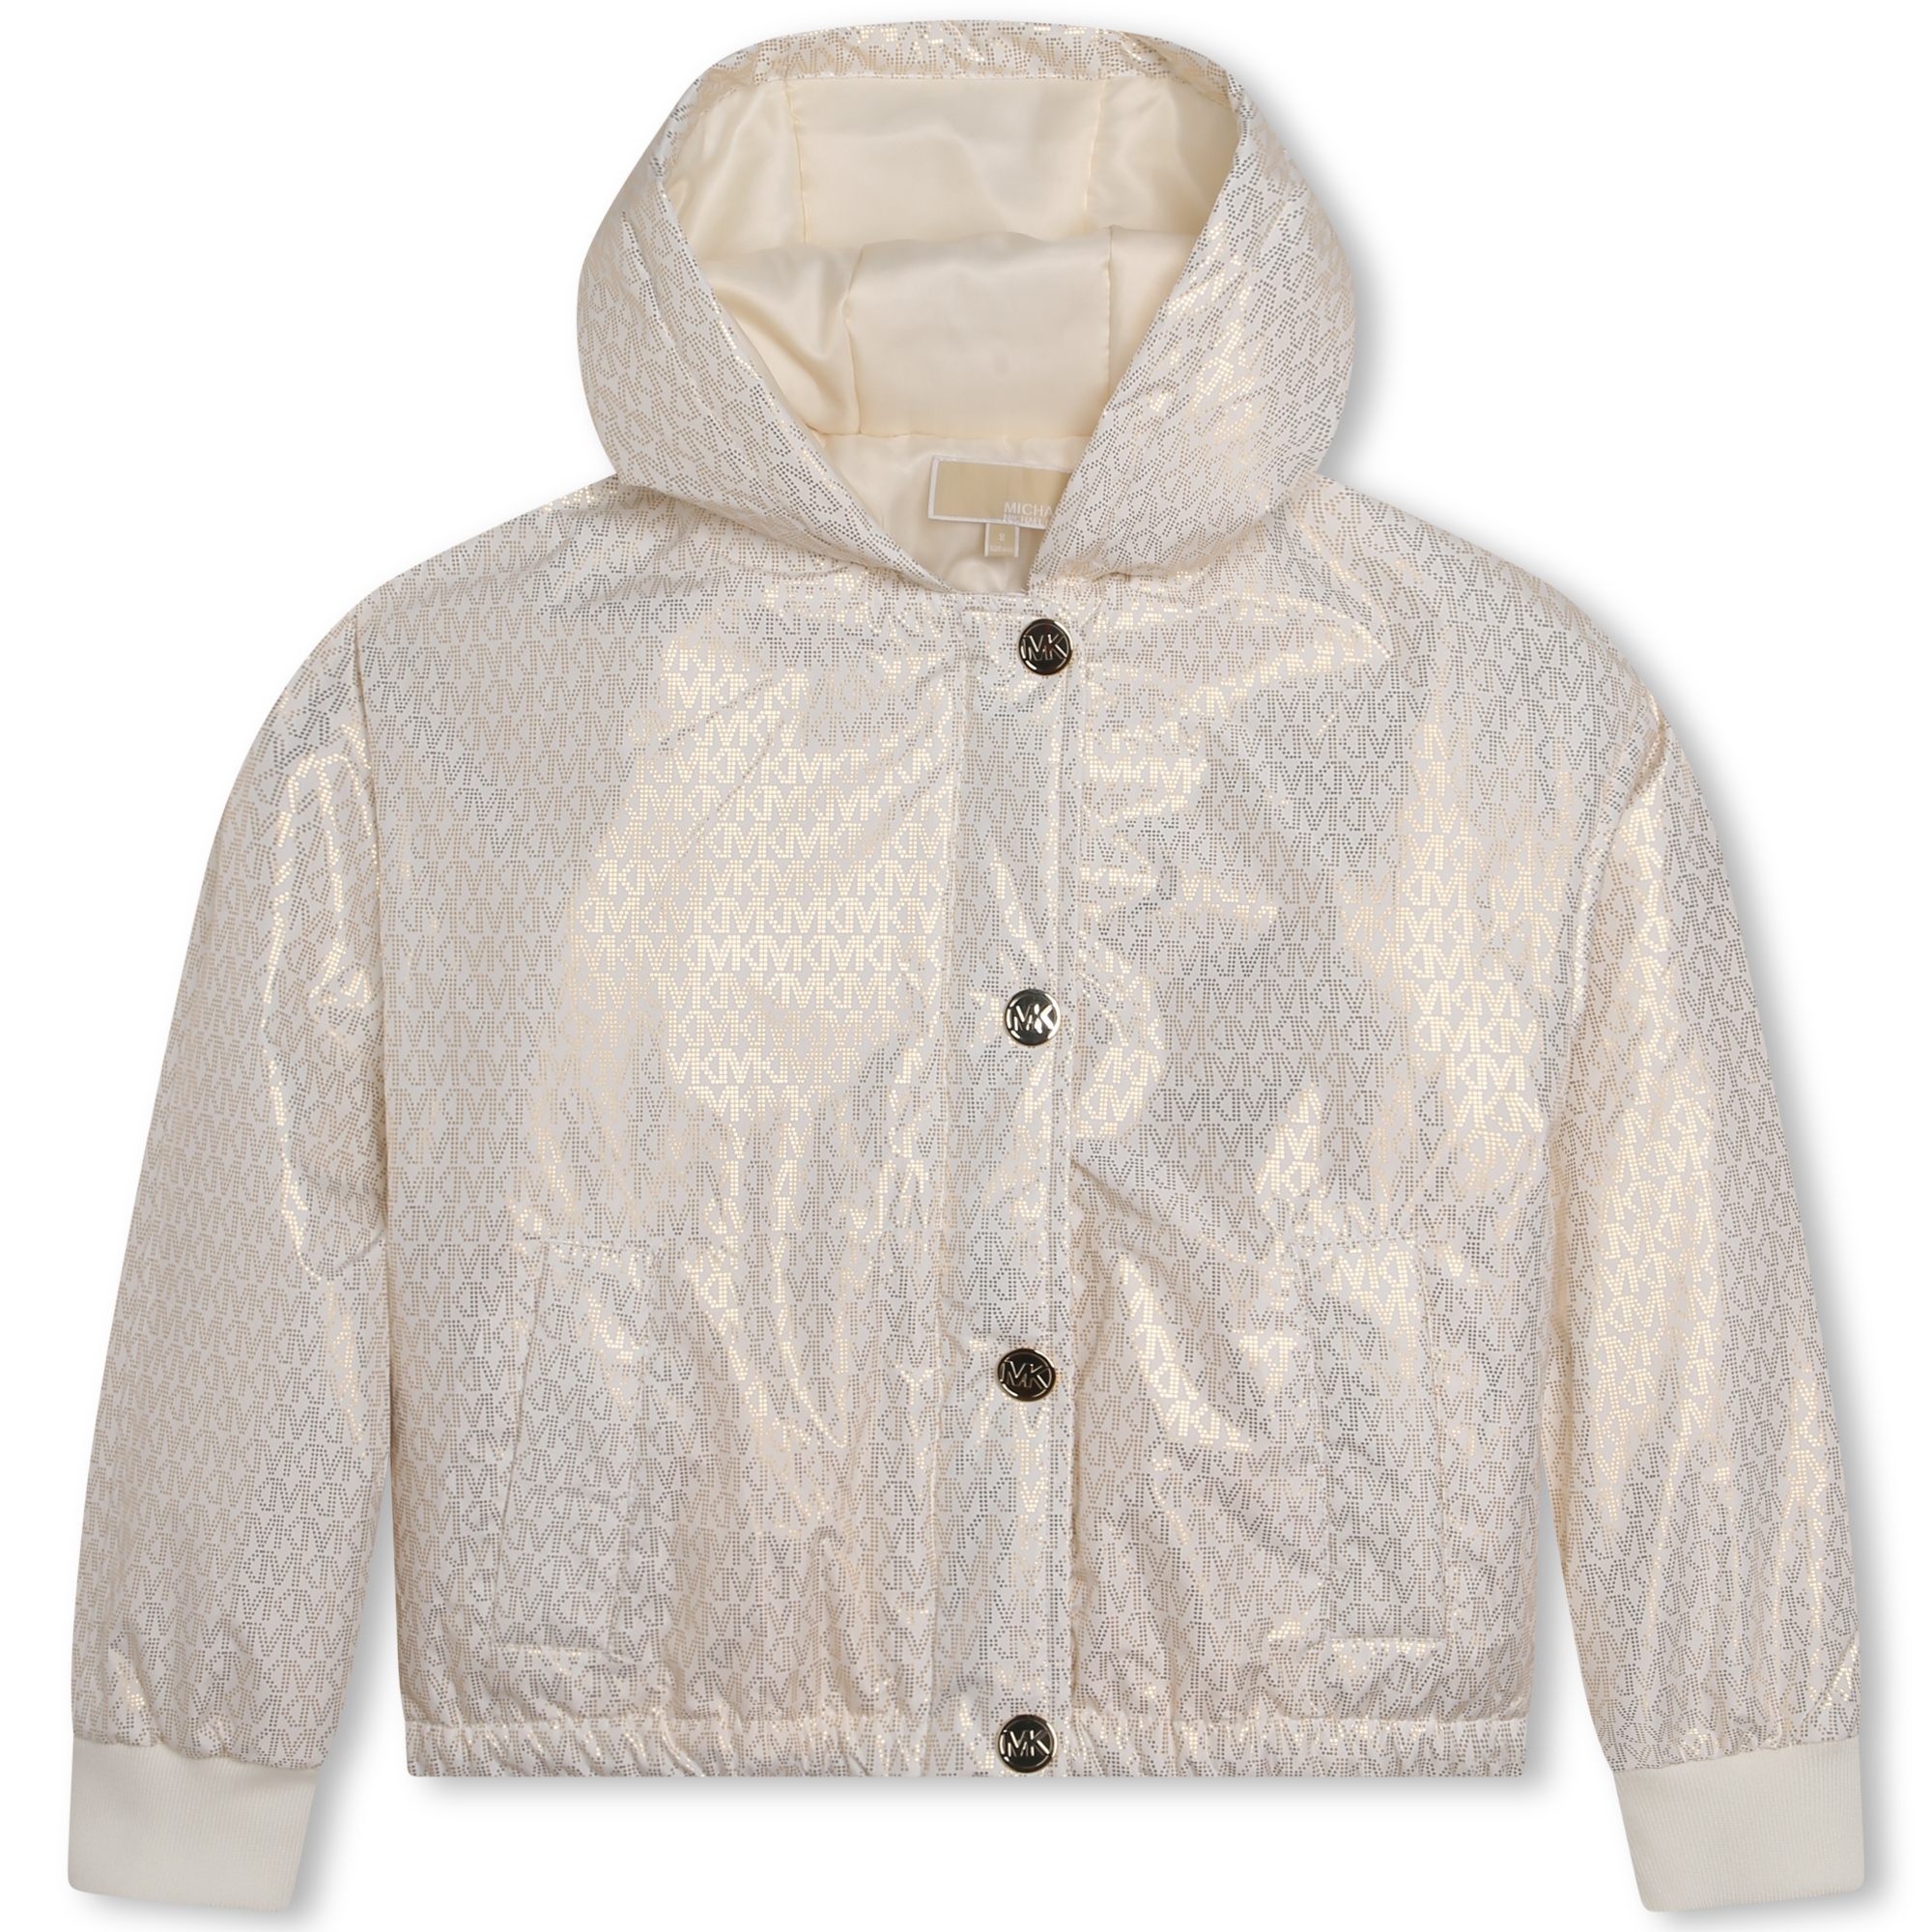 Lightweight hooded jacket MICHAEL KORS for GIRL